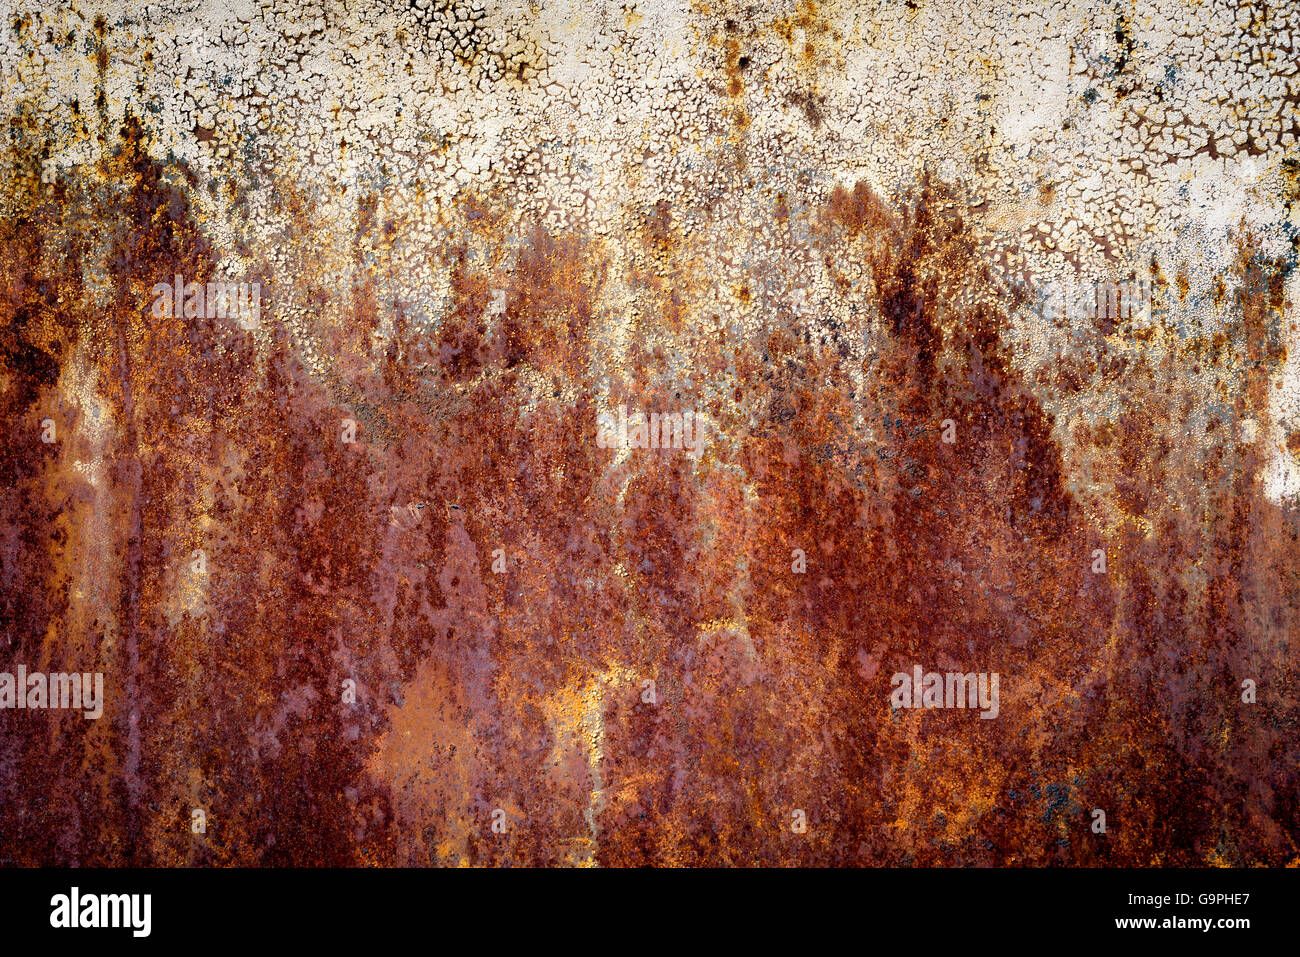 Sehr alte dunkel orange Rostflecken auf einem gealterten Metalloberfläche. Die Muster werden durch schwere Oxidation gebildet. Stockfoto